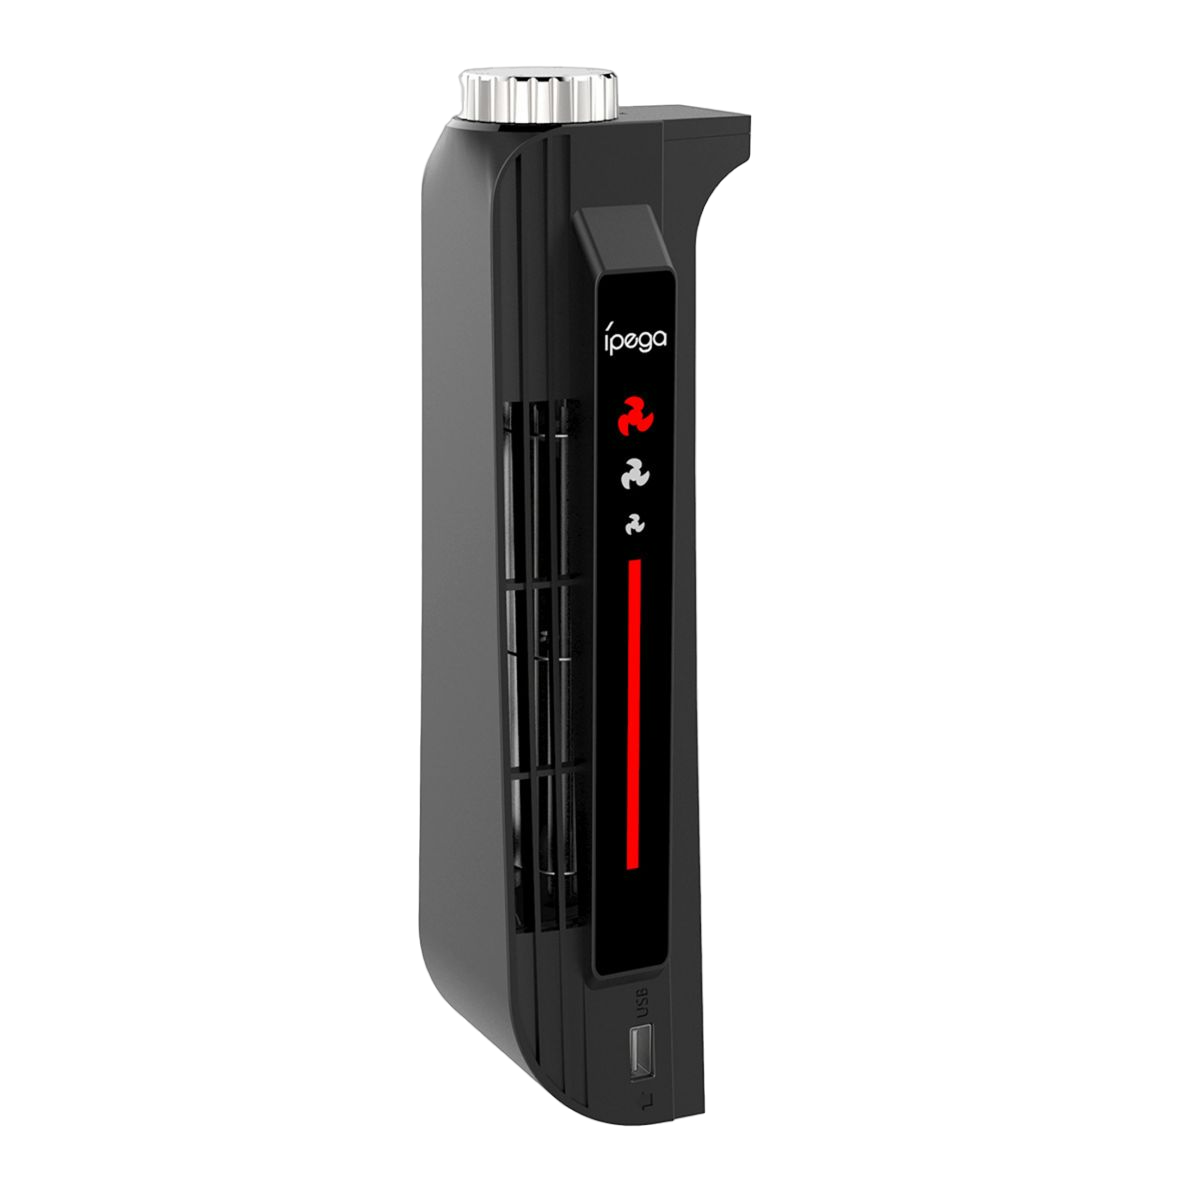 Turbo-Lüfter, für Kühlgebläse Turbo-Lüfter des RESPIEL Windgeschwindigkeiten, mit PS5, Hauptgeräts, USB-Anschluss, 3 schwarz